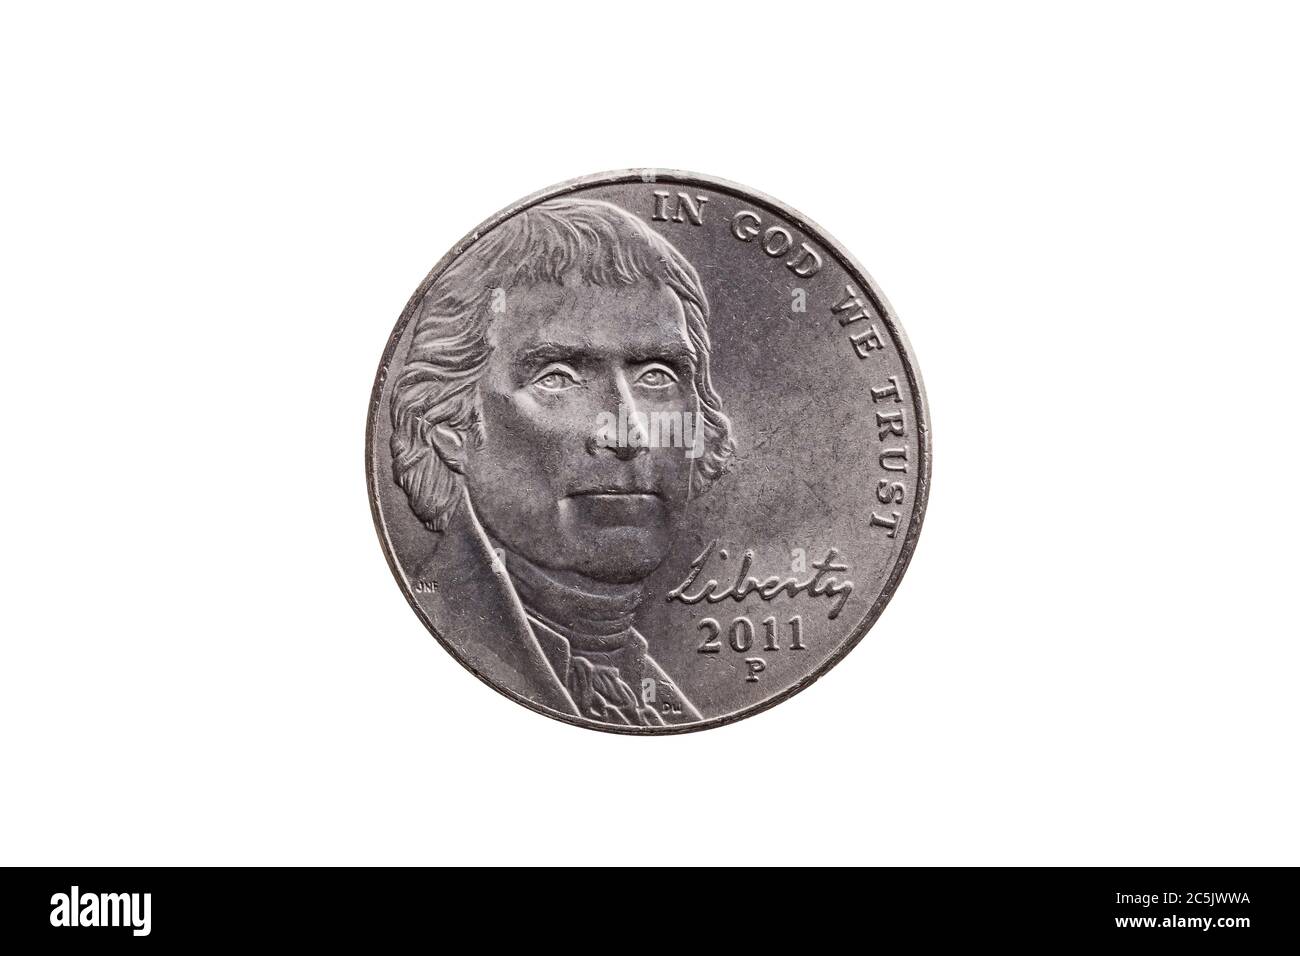 Moneta di nichel a metà moneta USA (25 centesimi) con un ritratto di Thomas Jefferson tagliato e isolato su uno sfondo bianco Foto Stock